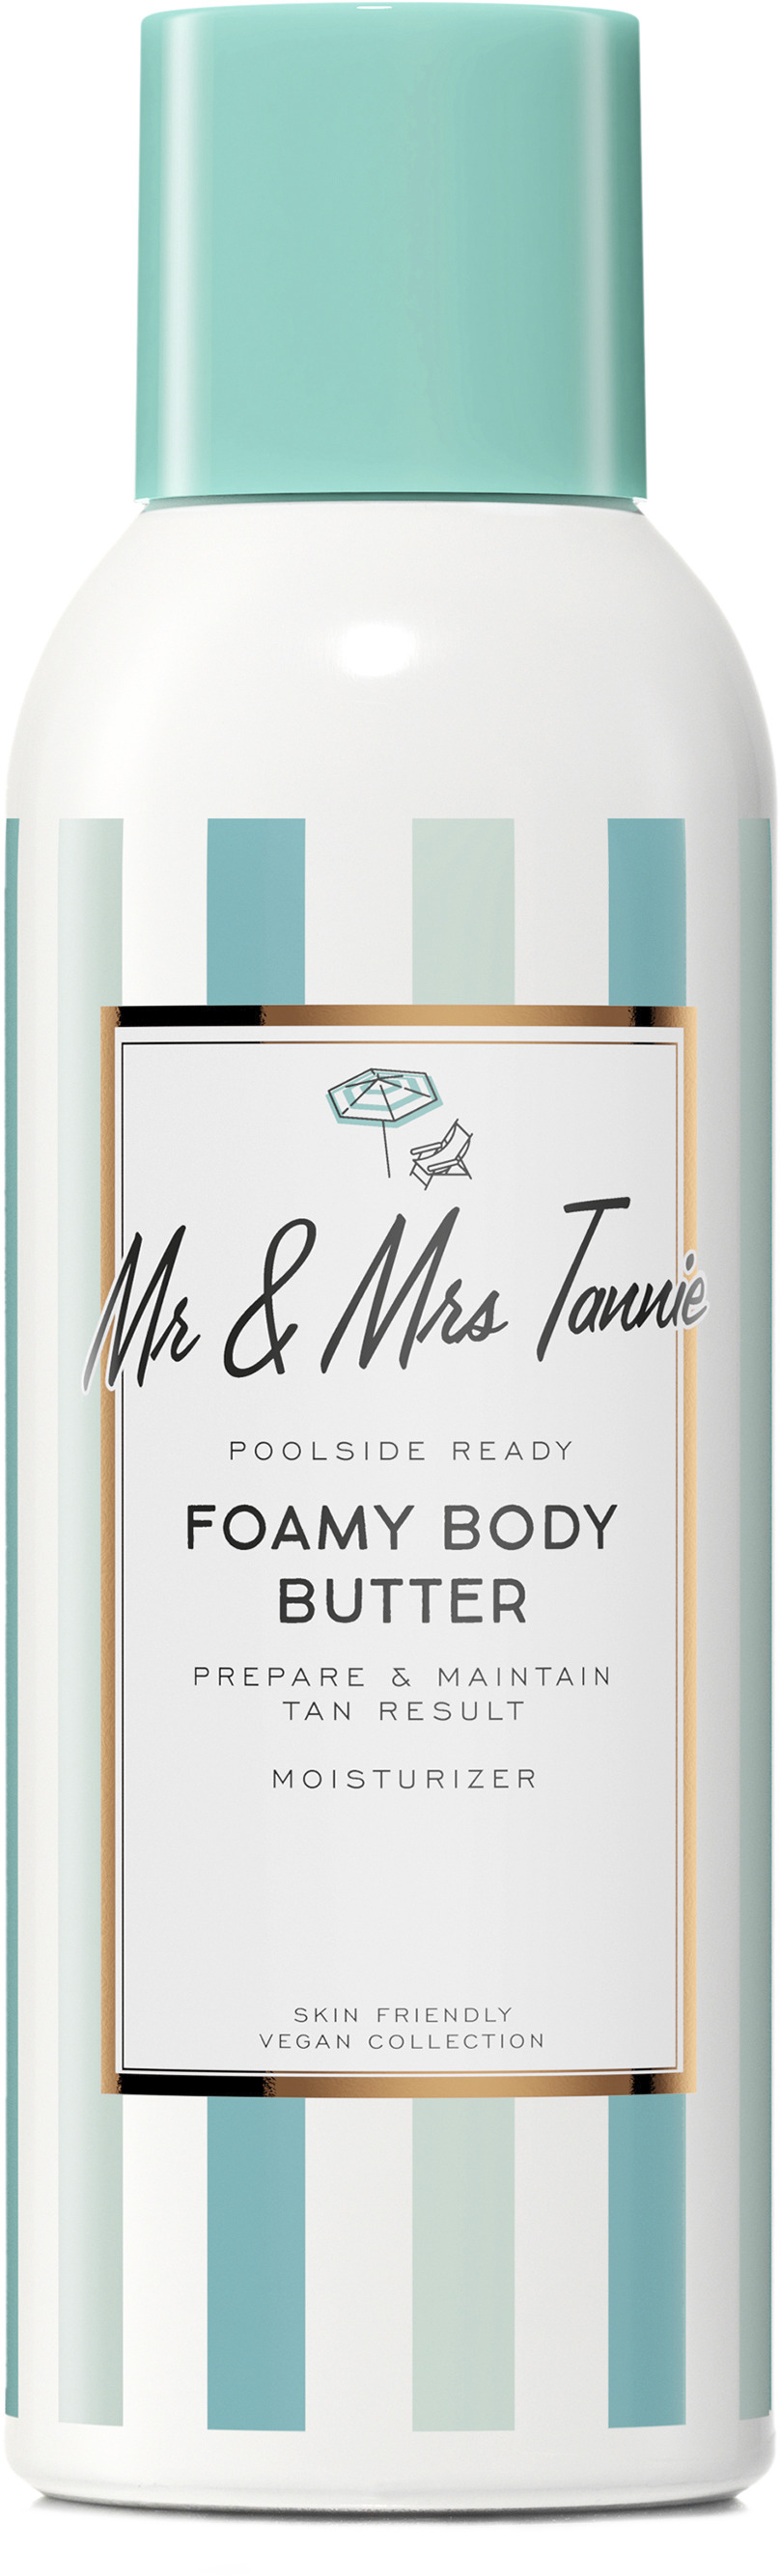 Mr & Mrs Tannie Foamy Body Butter 200 ml